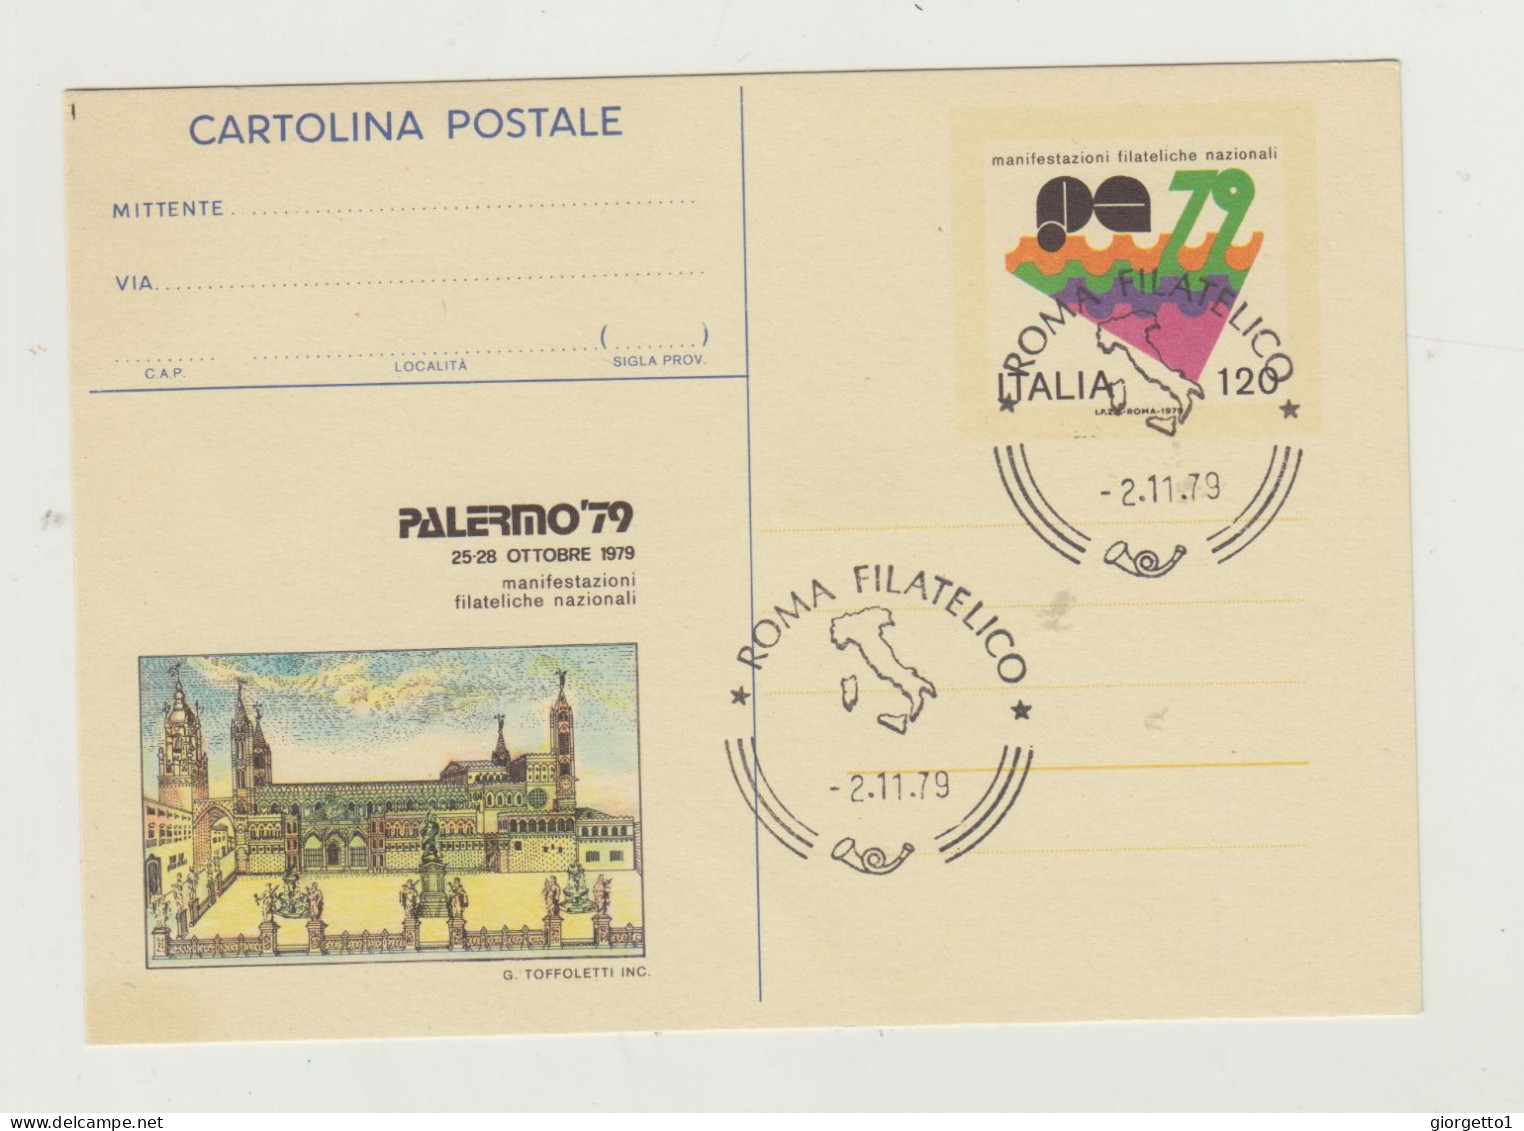 CARTOLINA POSTALE MANIFESTAZIONI FILATELICHE POSTALI - PALERMO 79 - ANNULLO ROMA FILATELICO 2-11-1979 - Storia Postale